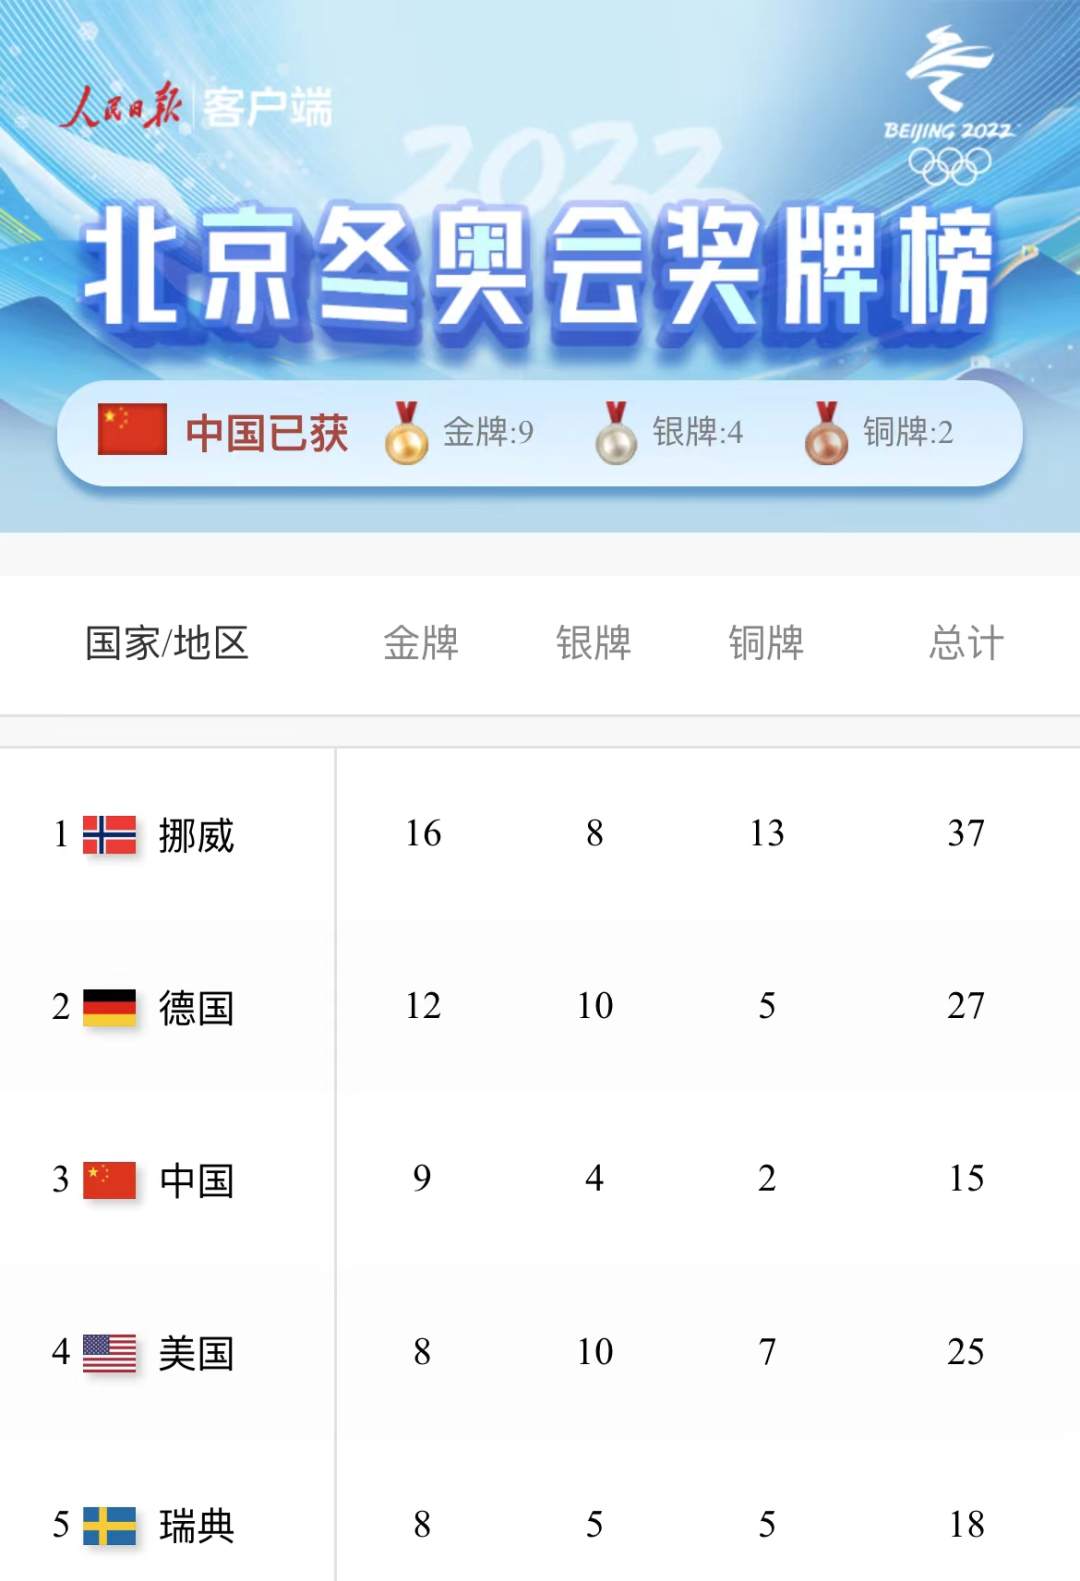 国内品牌女包排行榜_中国队位列奖牌榜第三位!金牌数、奖牌数均创历史最好成绩